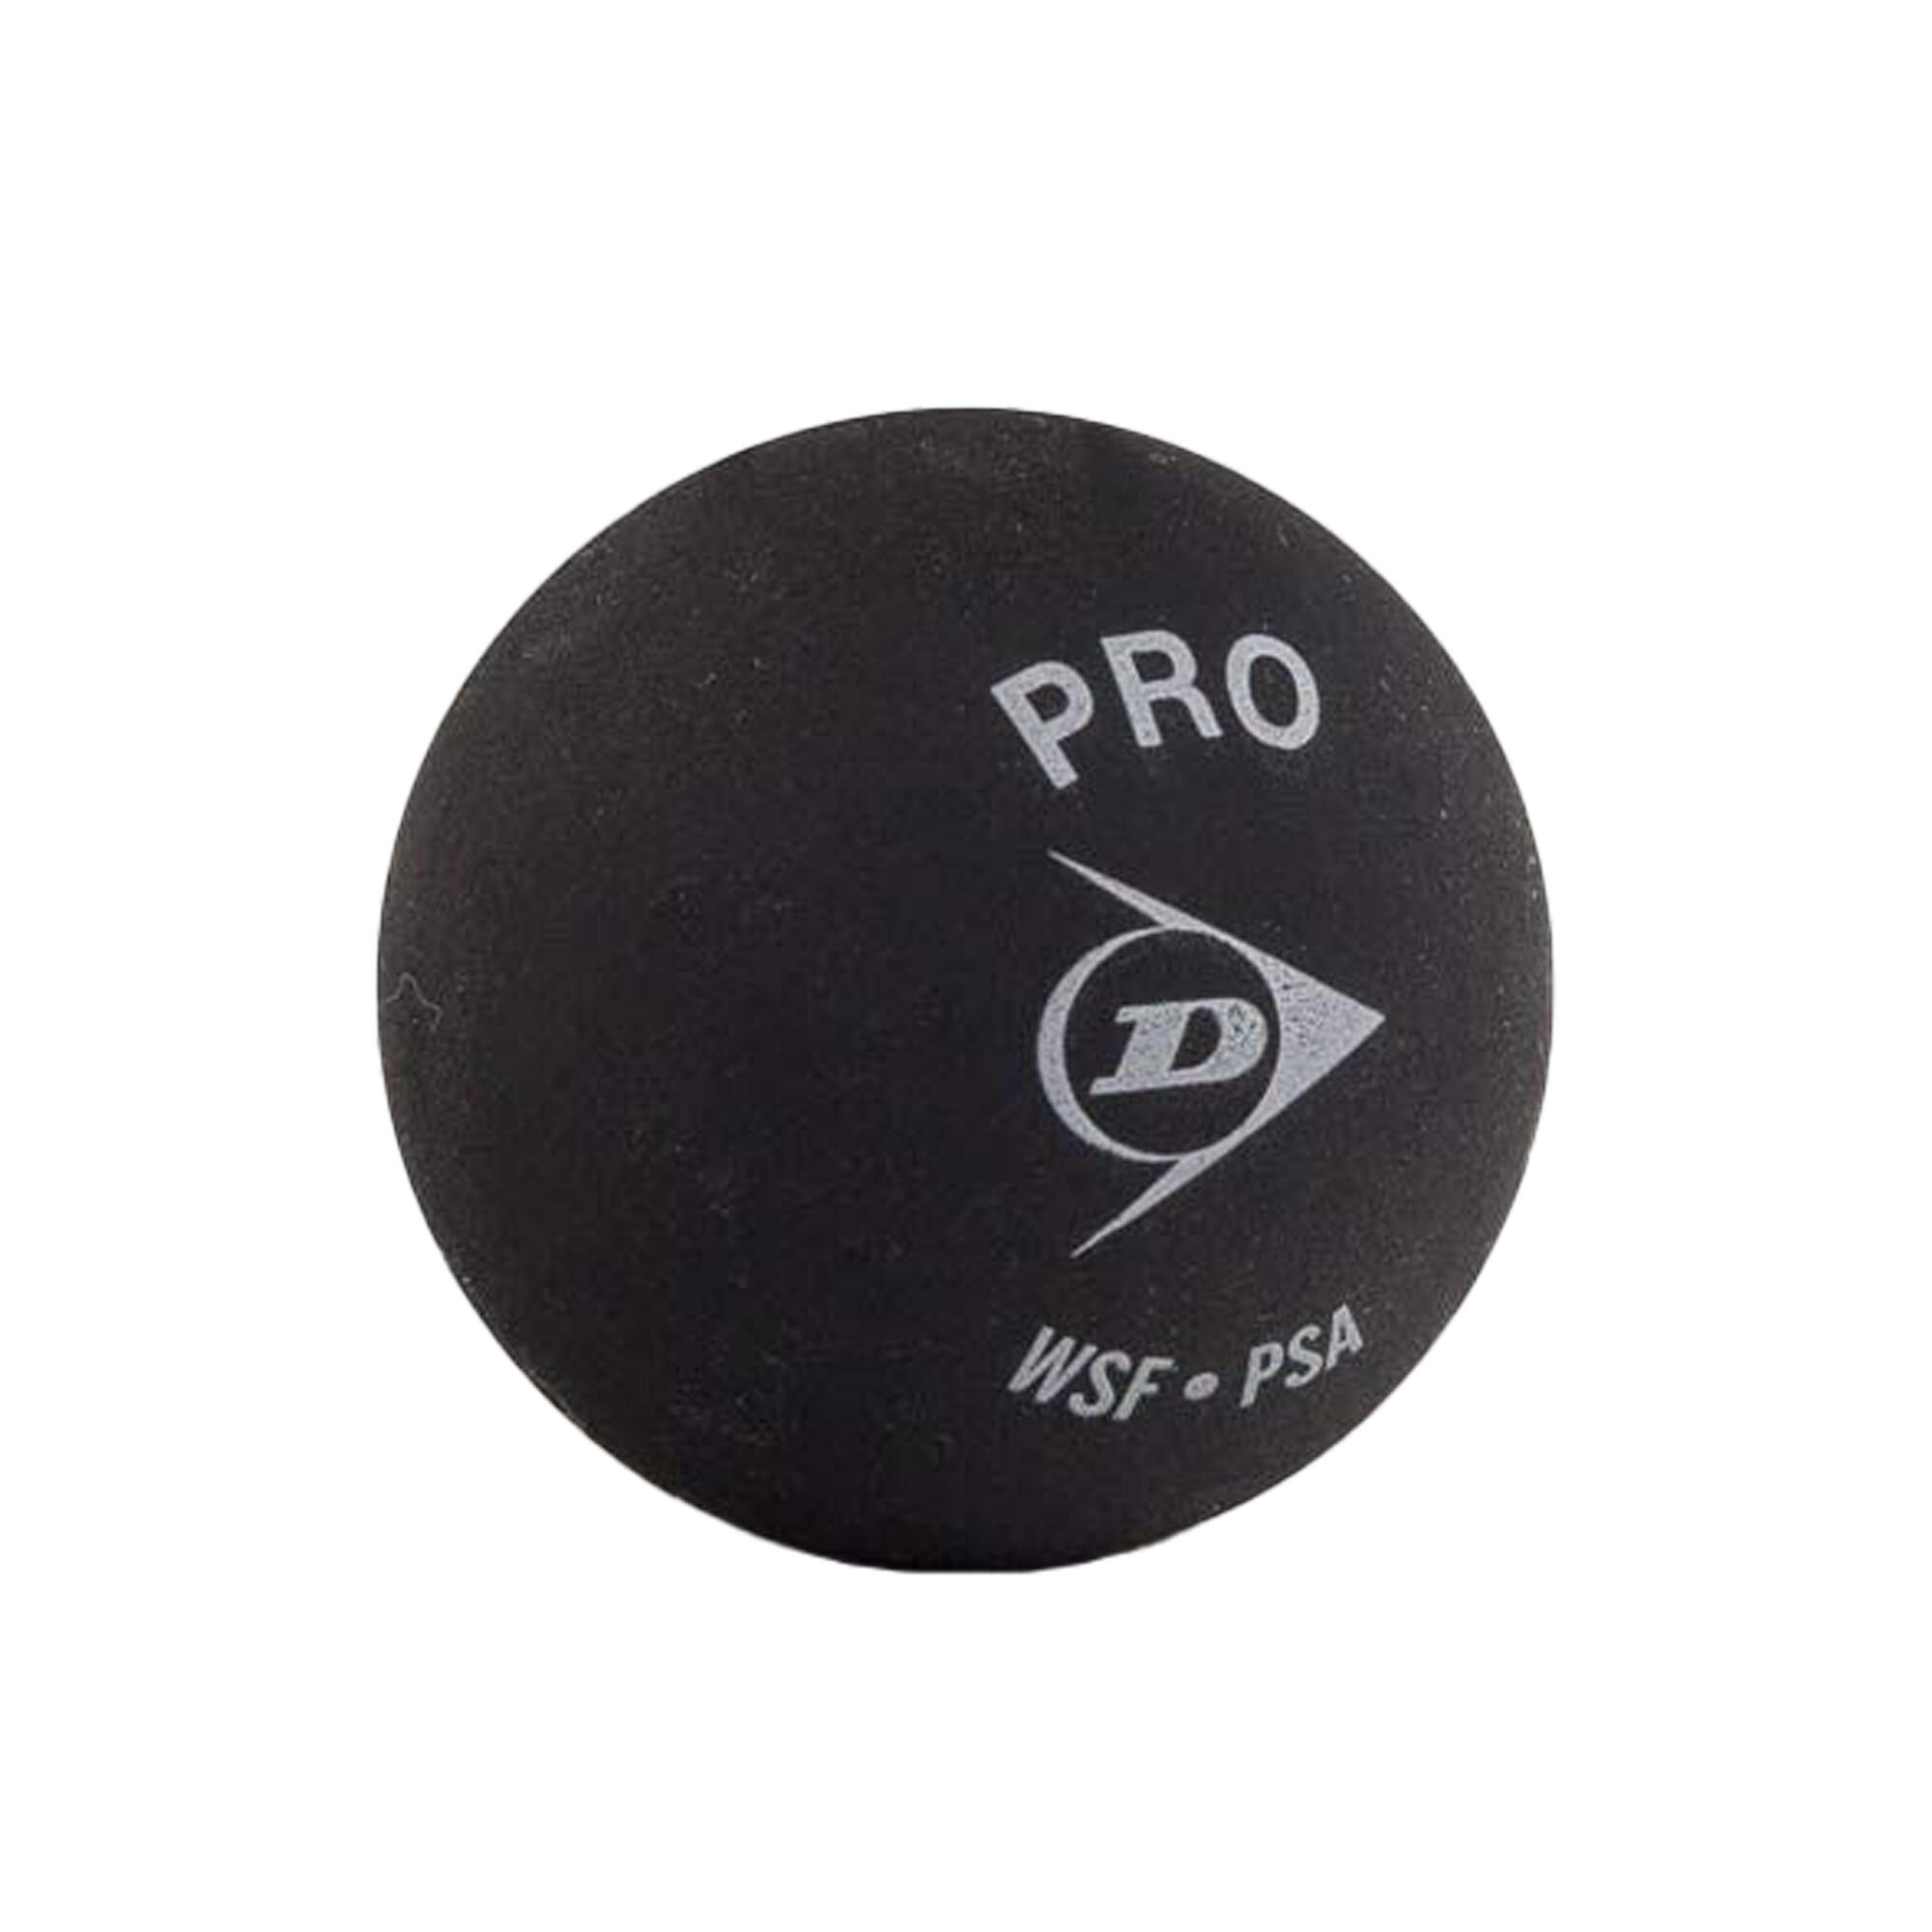 Pro Squash Balls (Pack of 12) (Black/White) 3/3